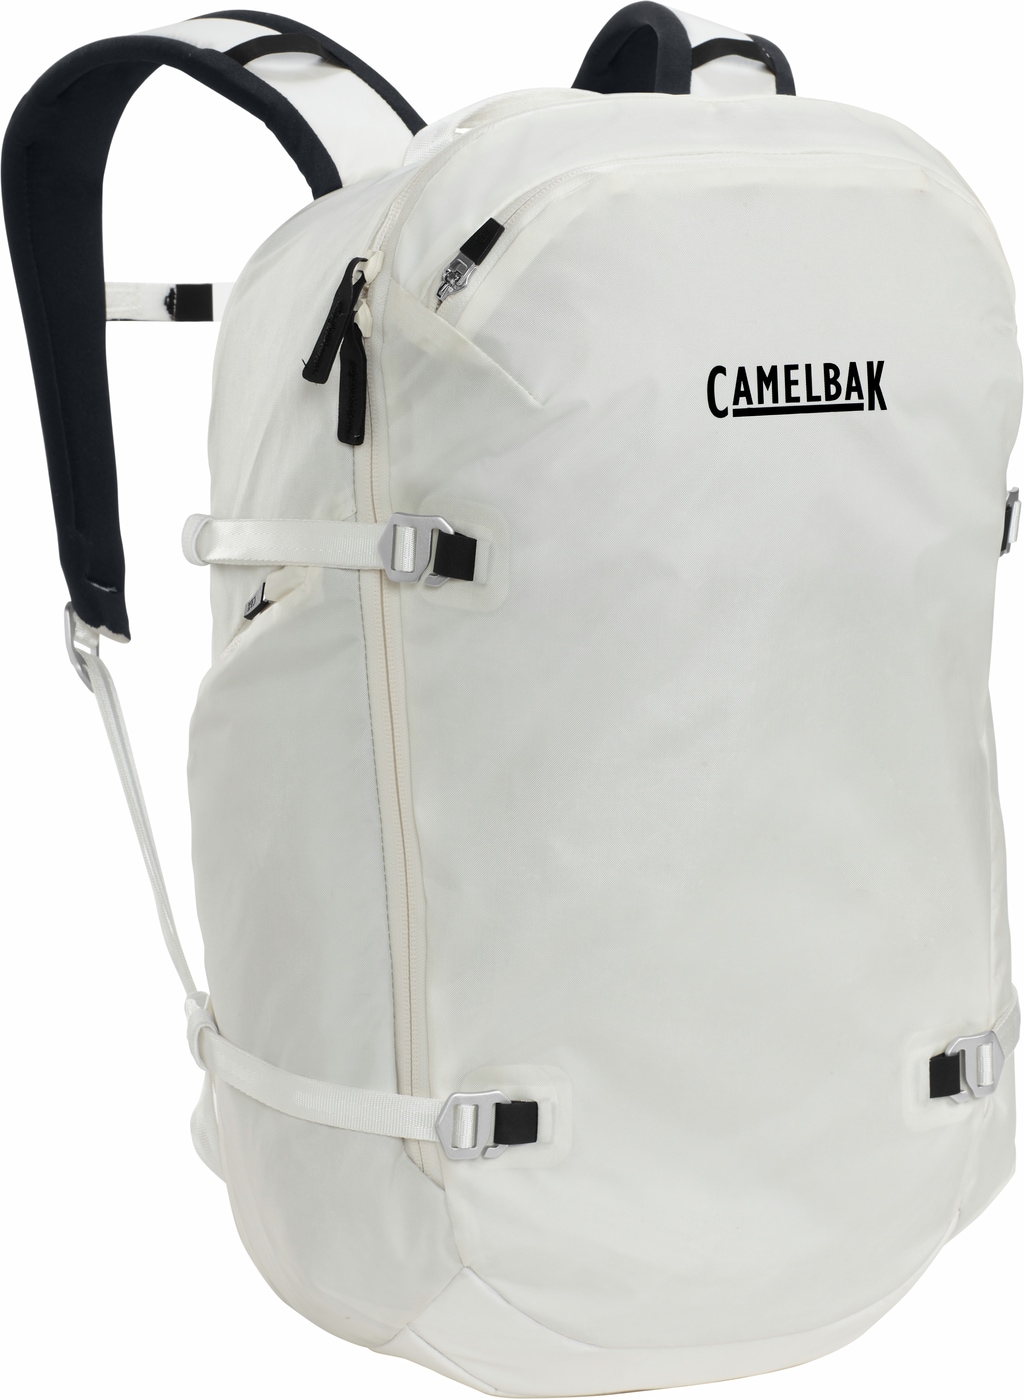 Camelbak Ryggsekk Adventure Travel Pack